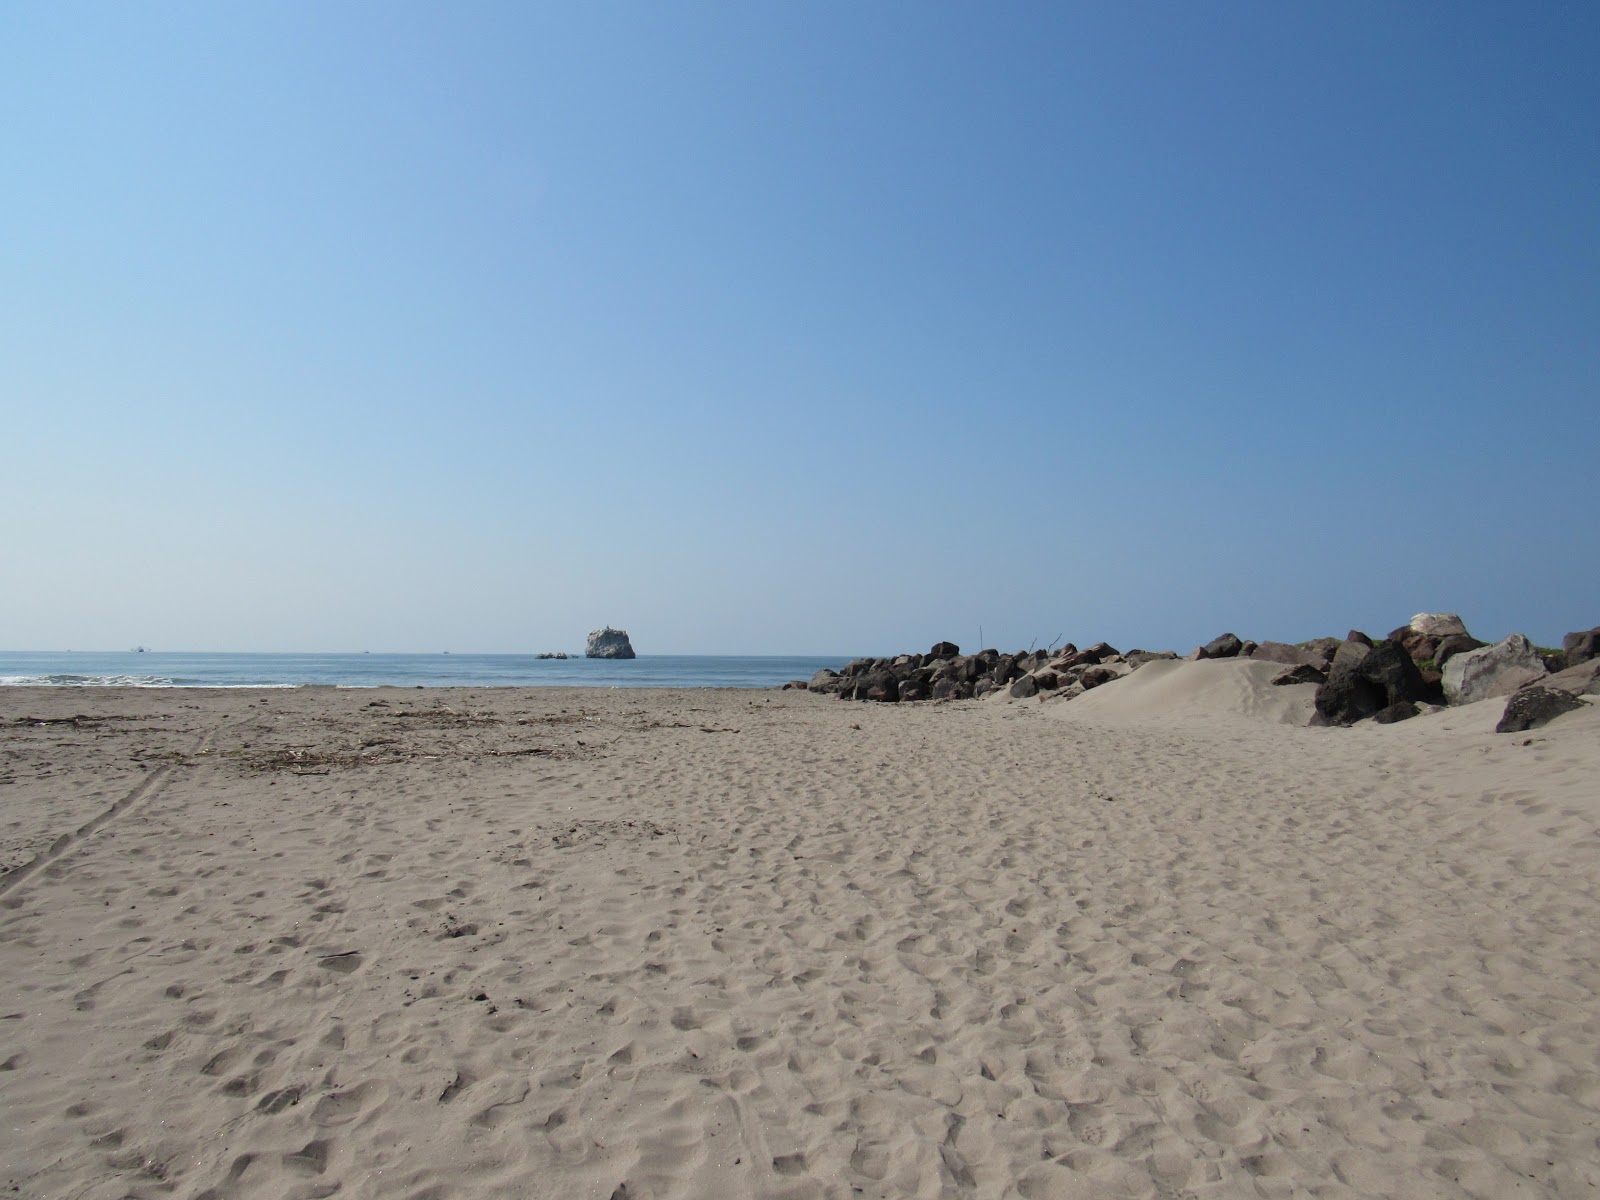 Zdjęcie El Borrego beach - popularne miejsce wśród znawców relaksu